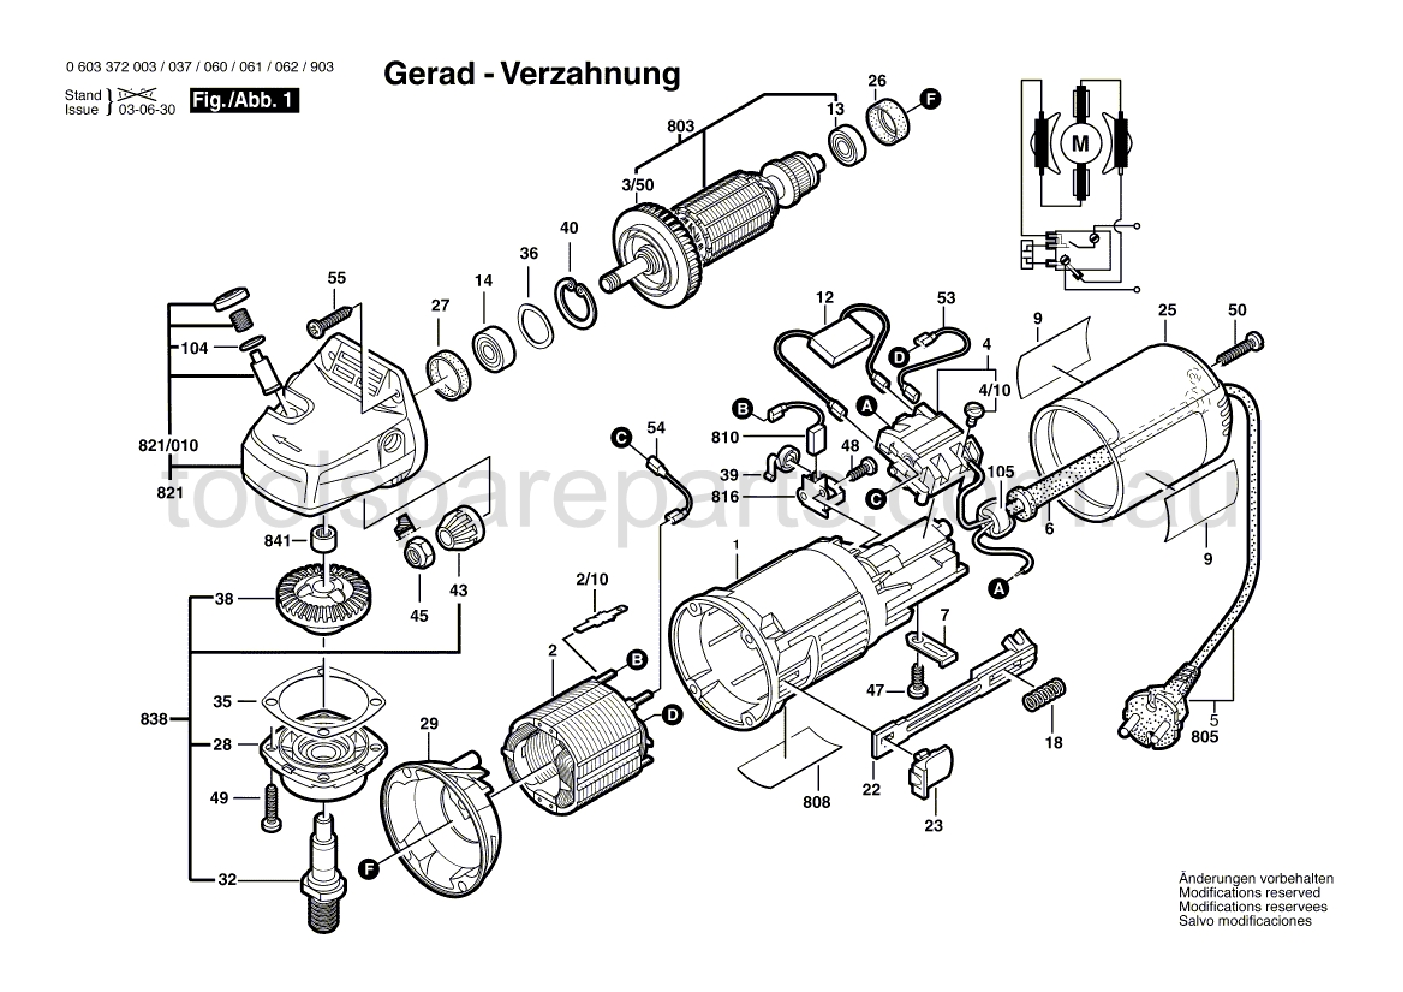 Bosch PWS 6-115 0603372062  Diagram 1